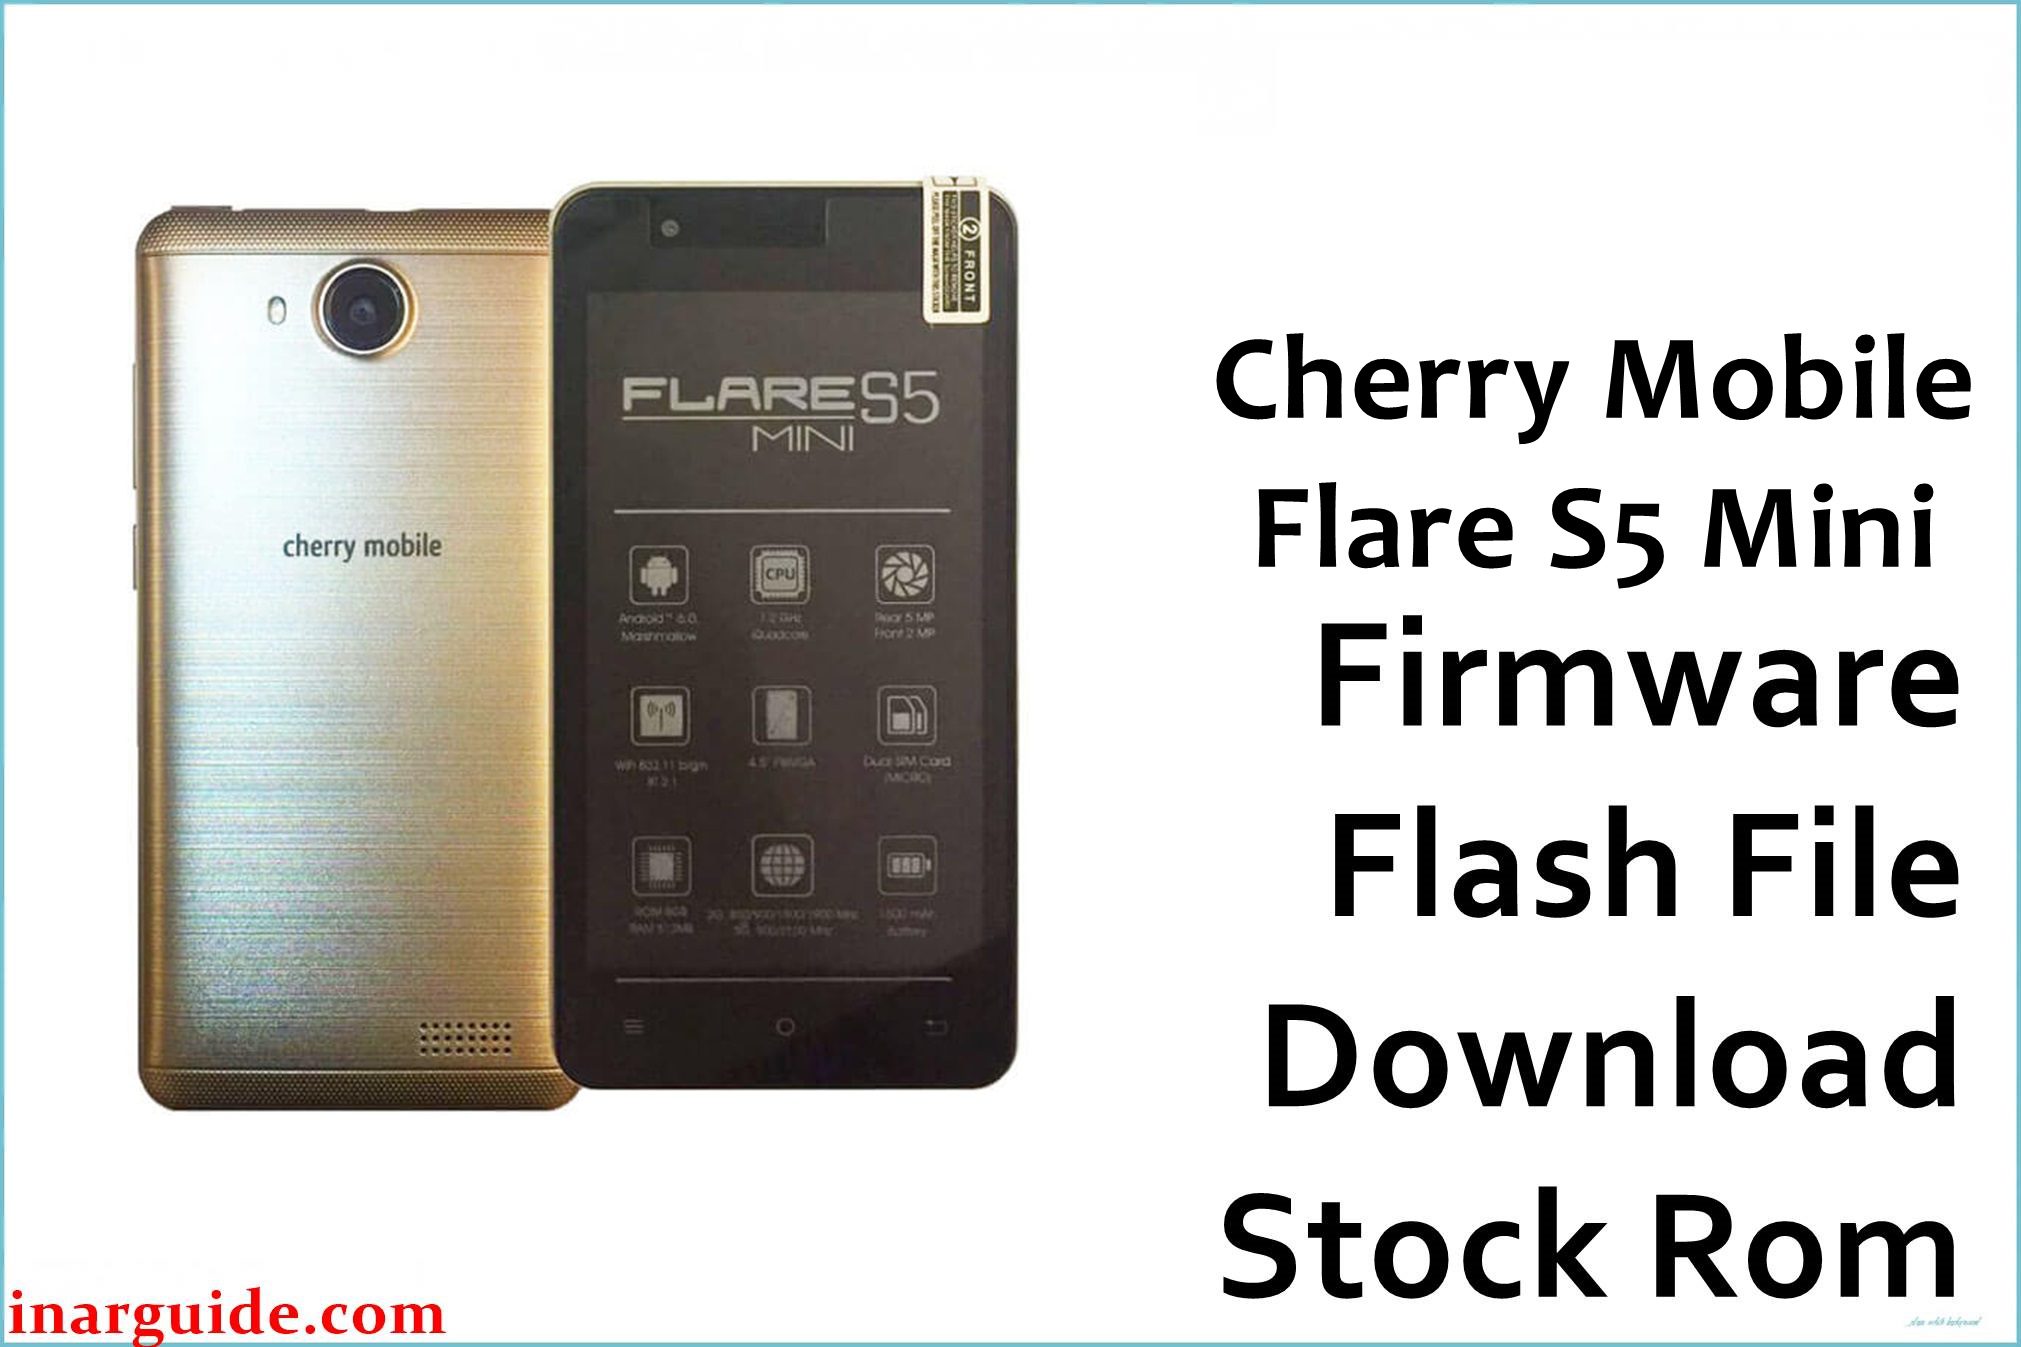 Cherry Mobile Flare S5 Mini